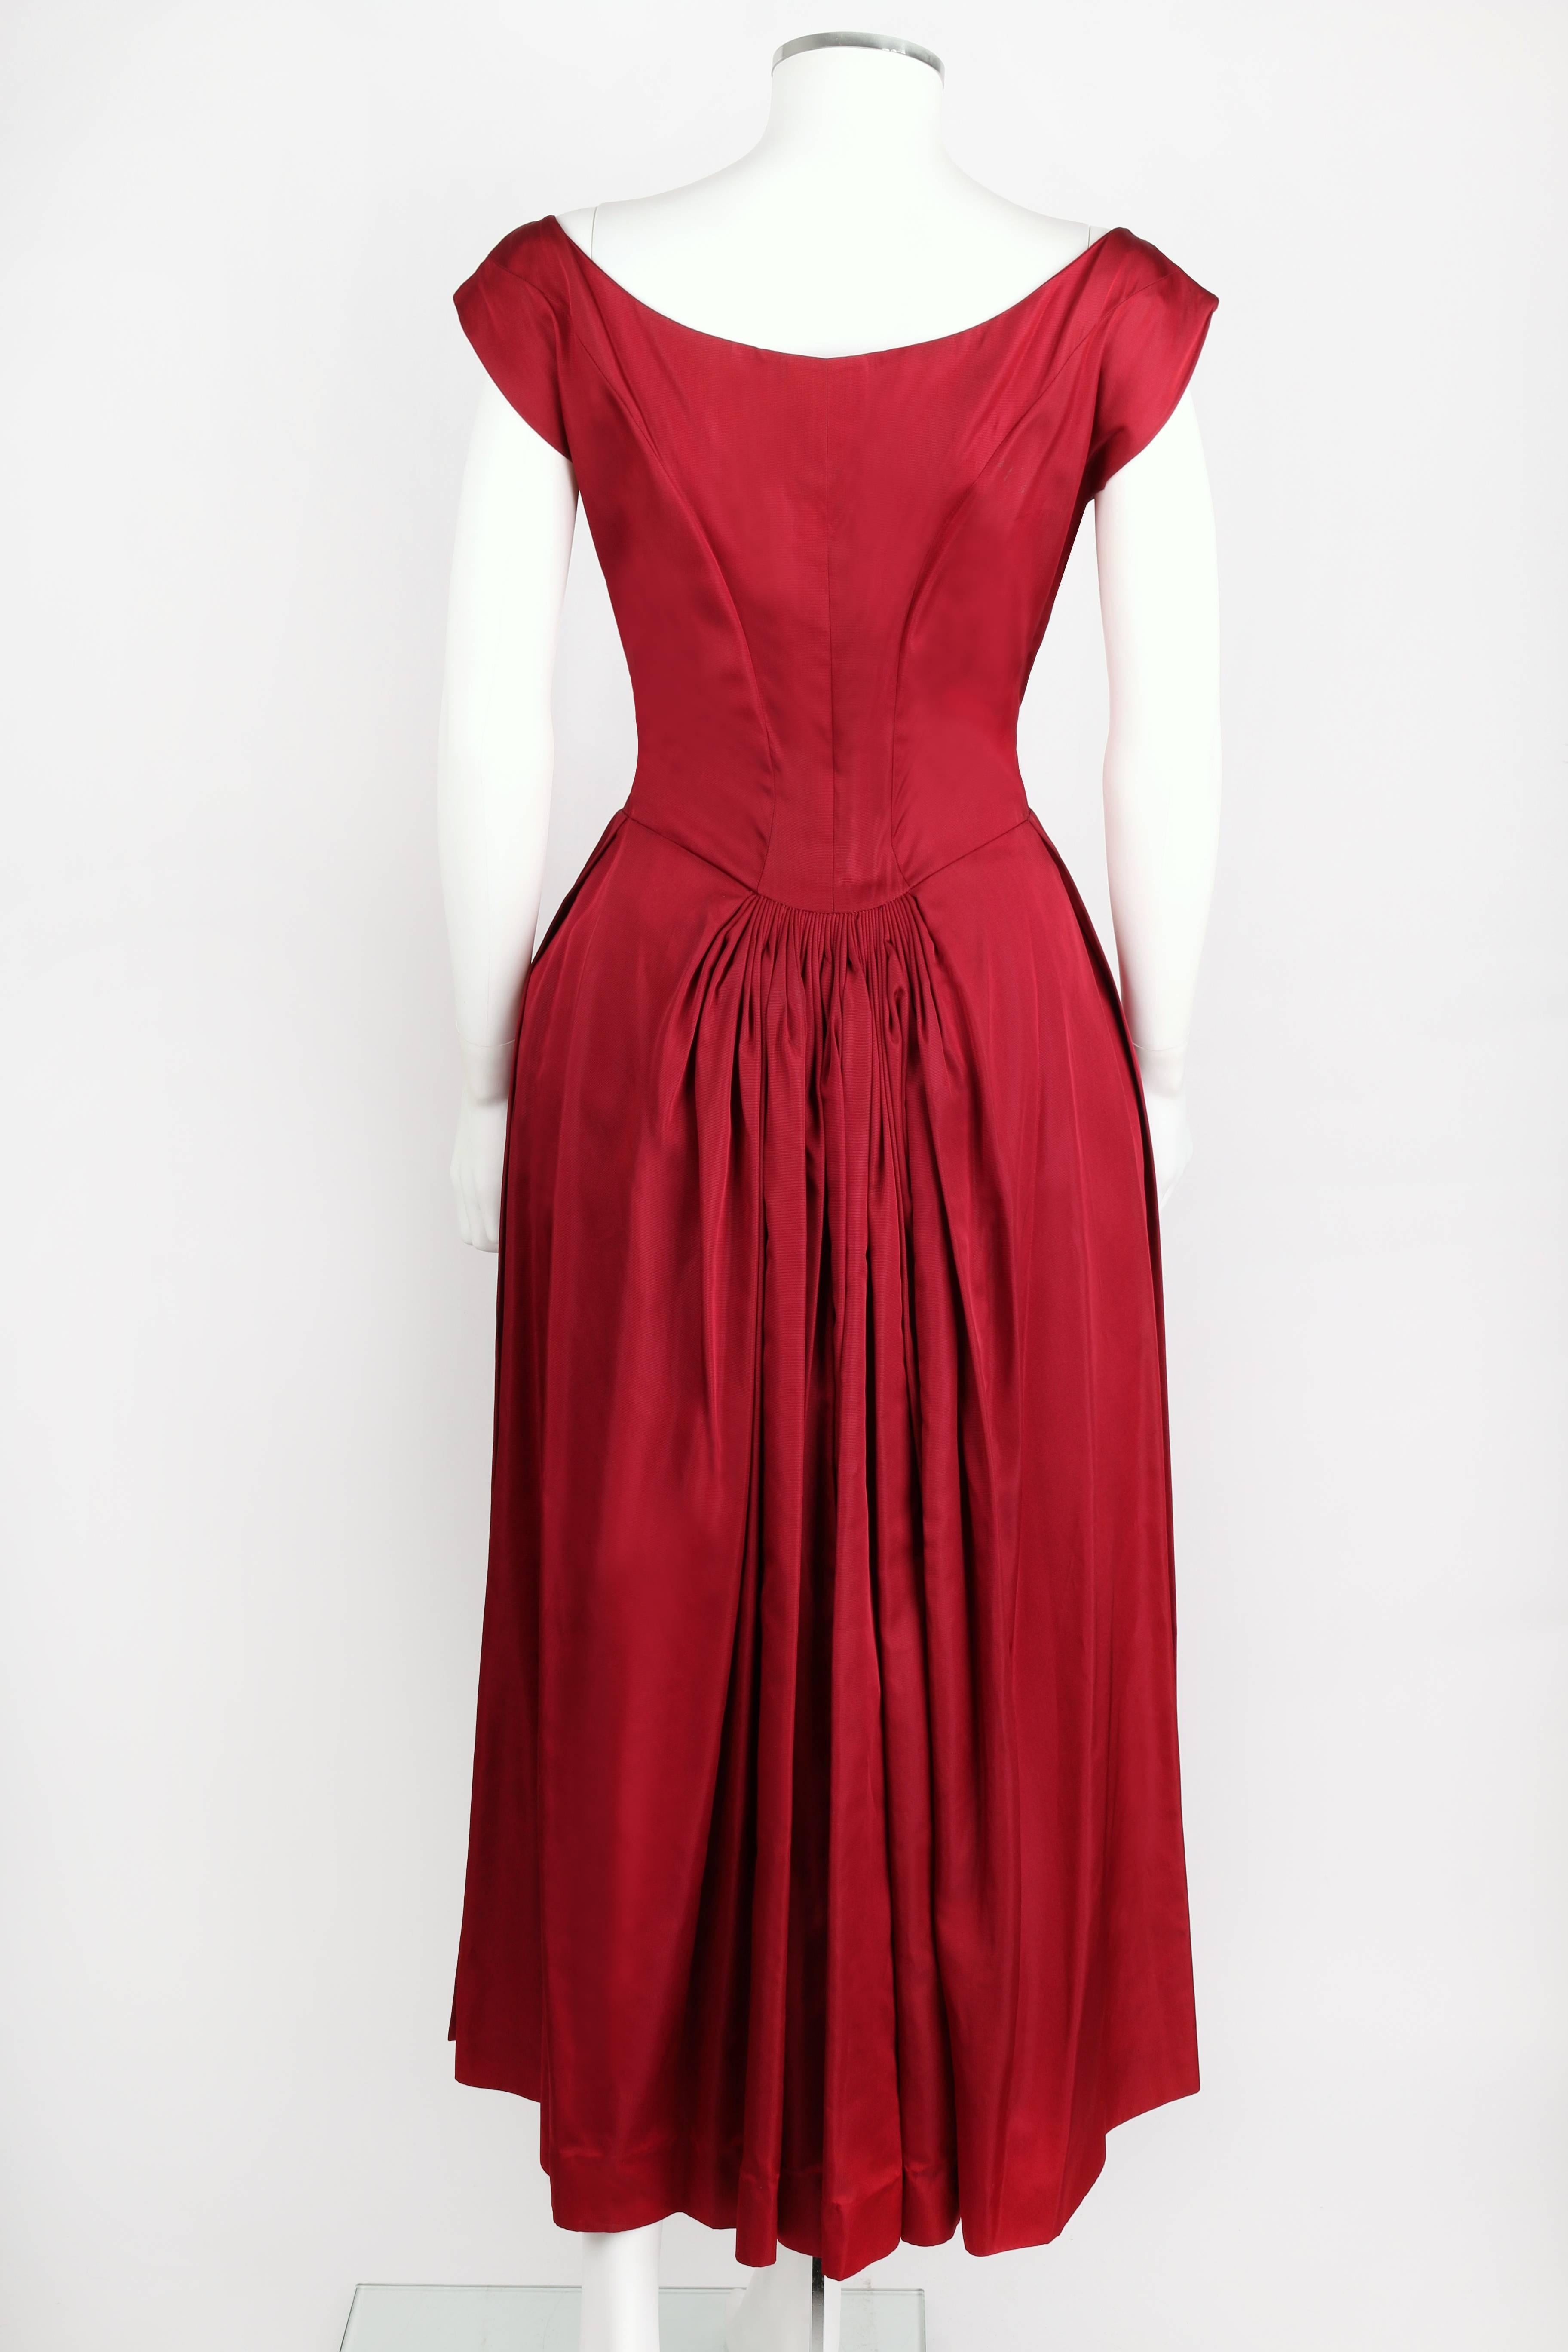 Vtg c.1949 NETTIE ROSENSTEIN Burgundy Red Evening Dress NOS Museum Piece Size S 2